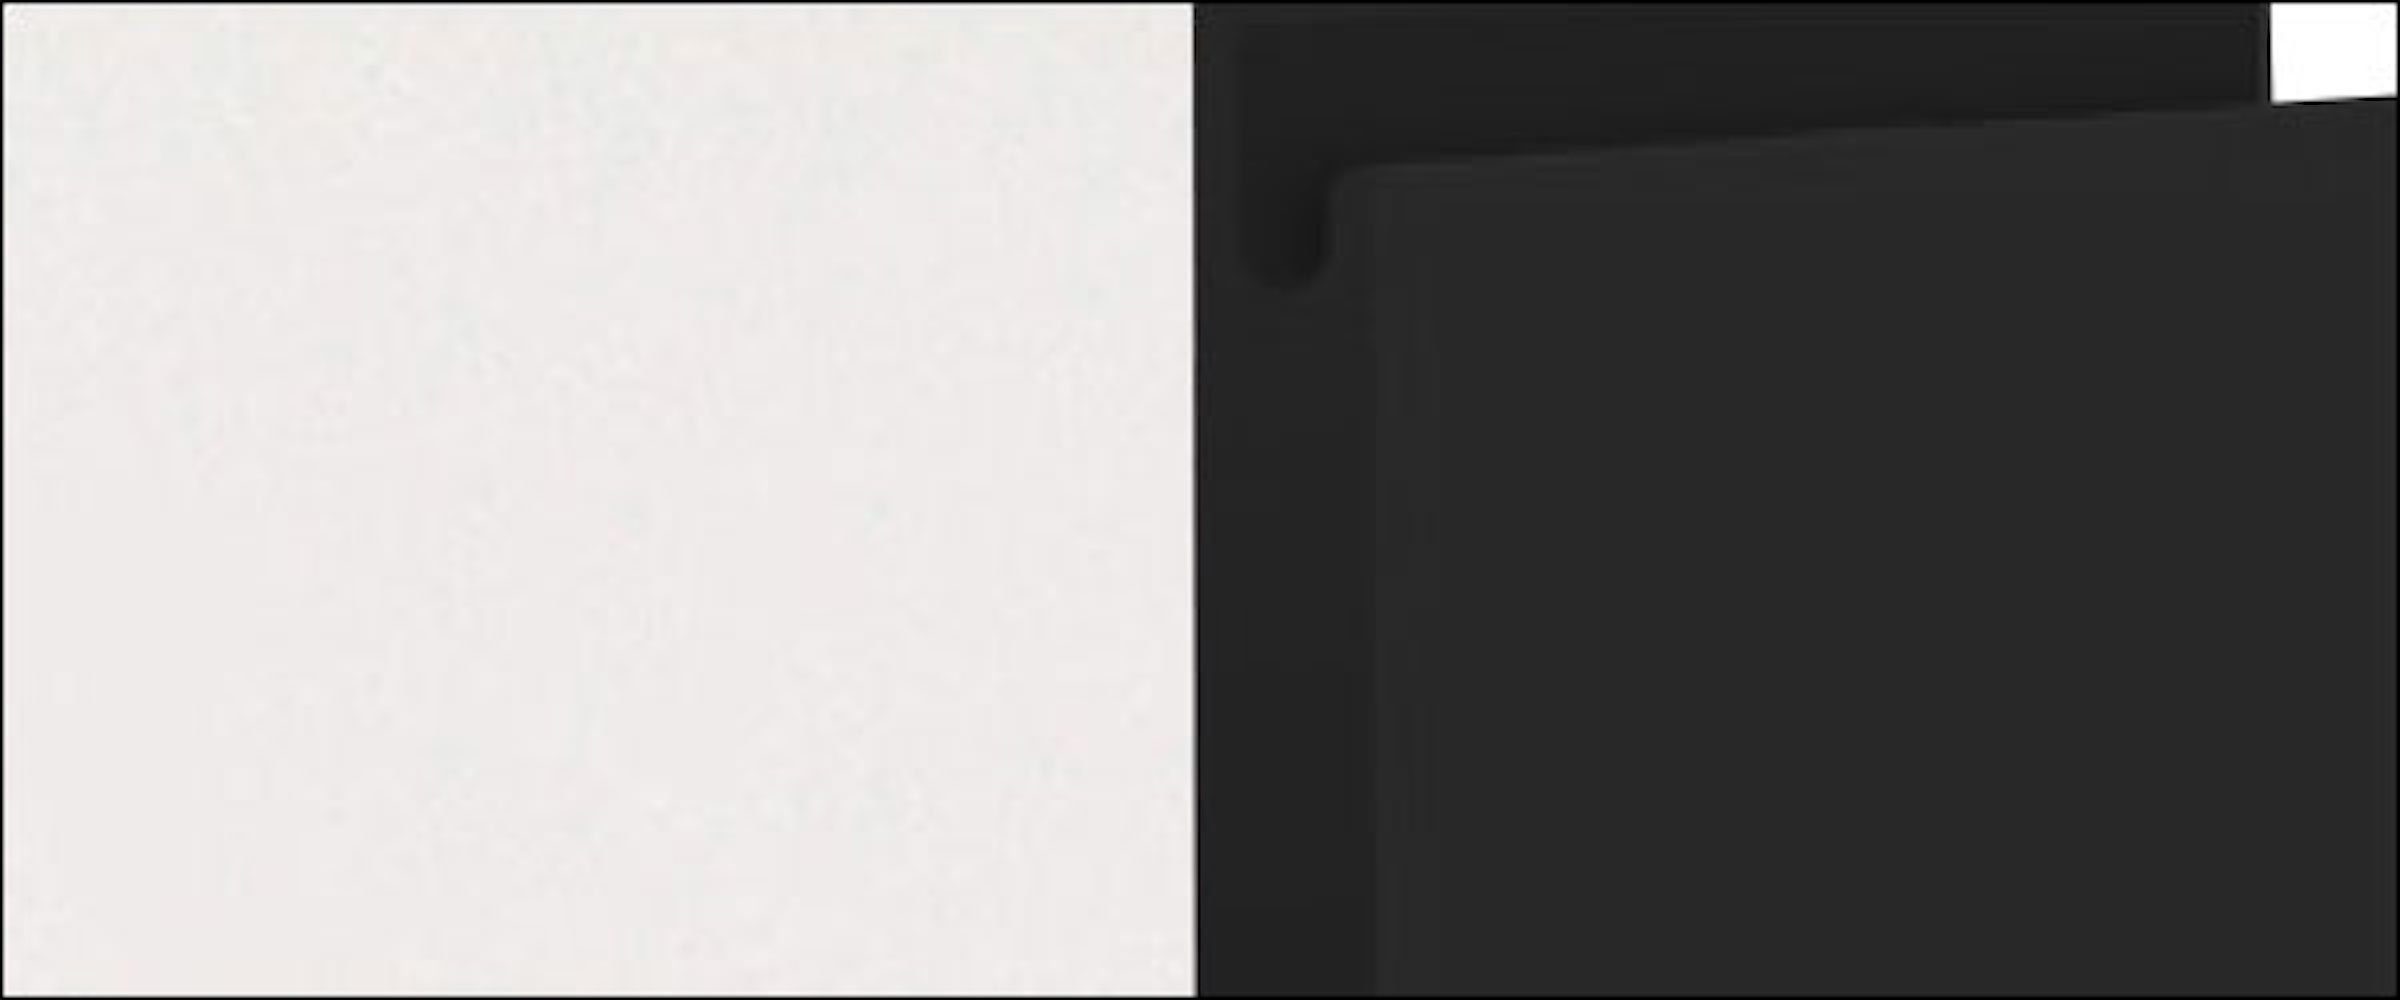 Korpusfarbe 60cm Acryl mit Front- grifflos Klappe Feldmann-Wohnen und schwarz Klapphängeschrank Avellino matt wählbar